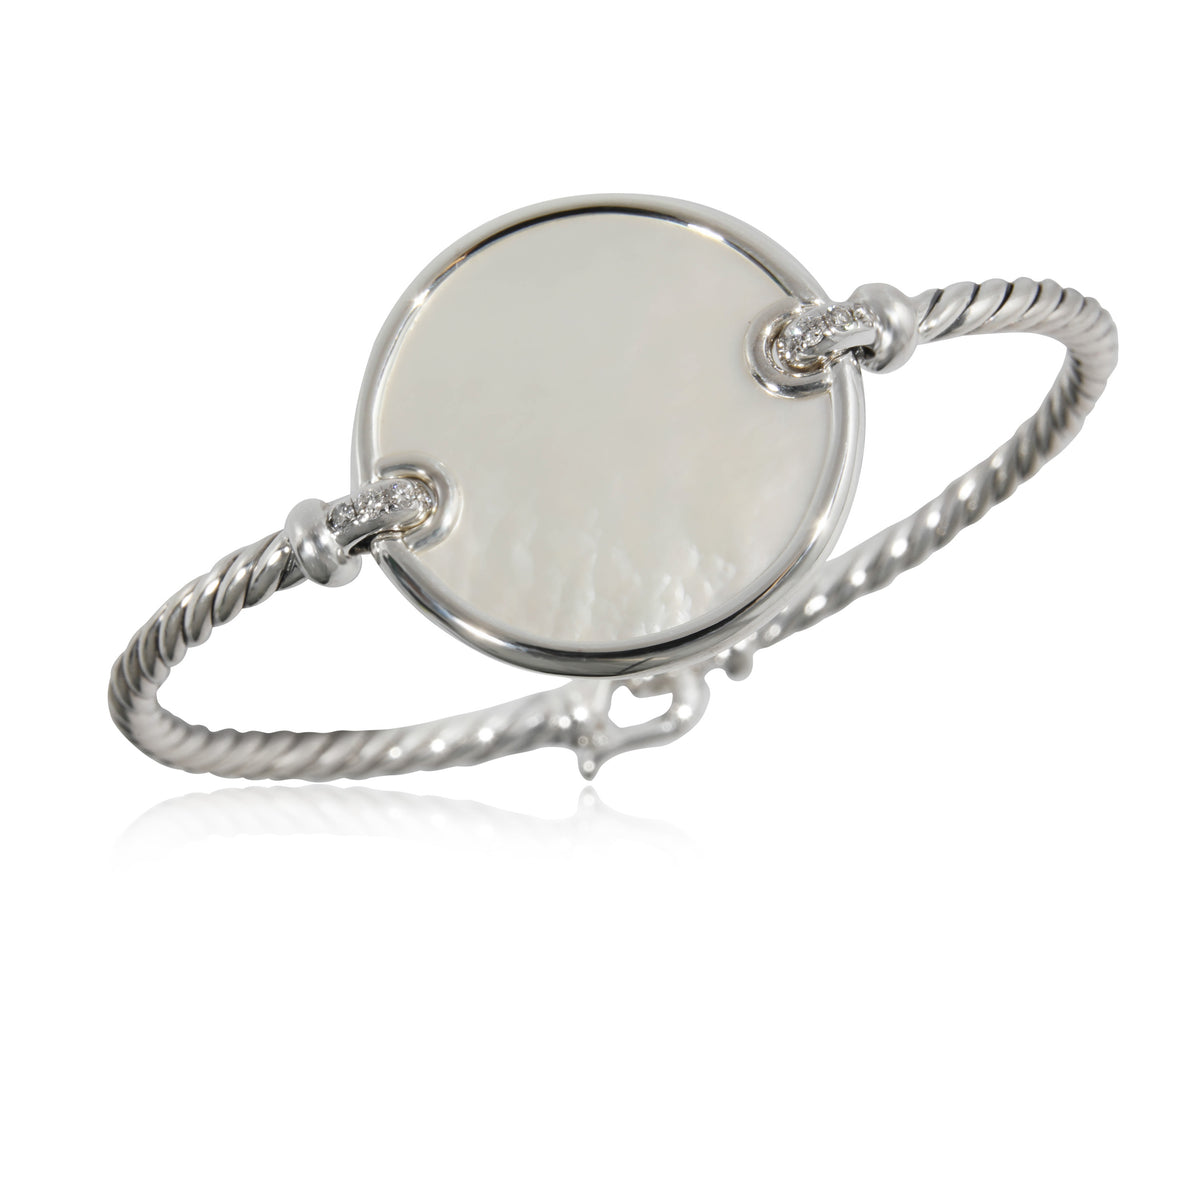 David Yurman Elements Mother of Pearl & Diamond Bracelet in Silver 0.07 CTW